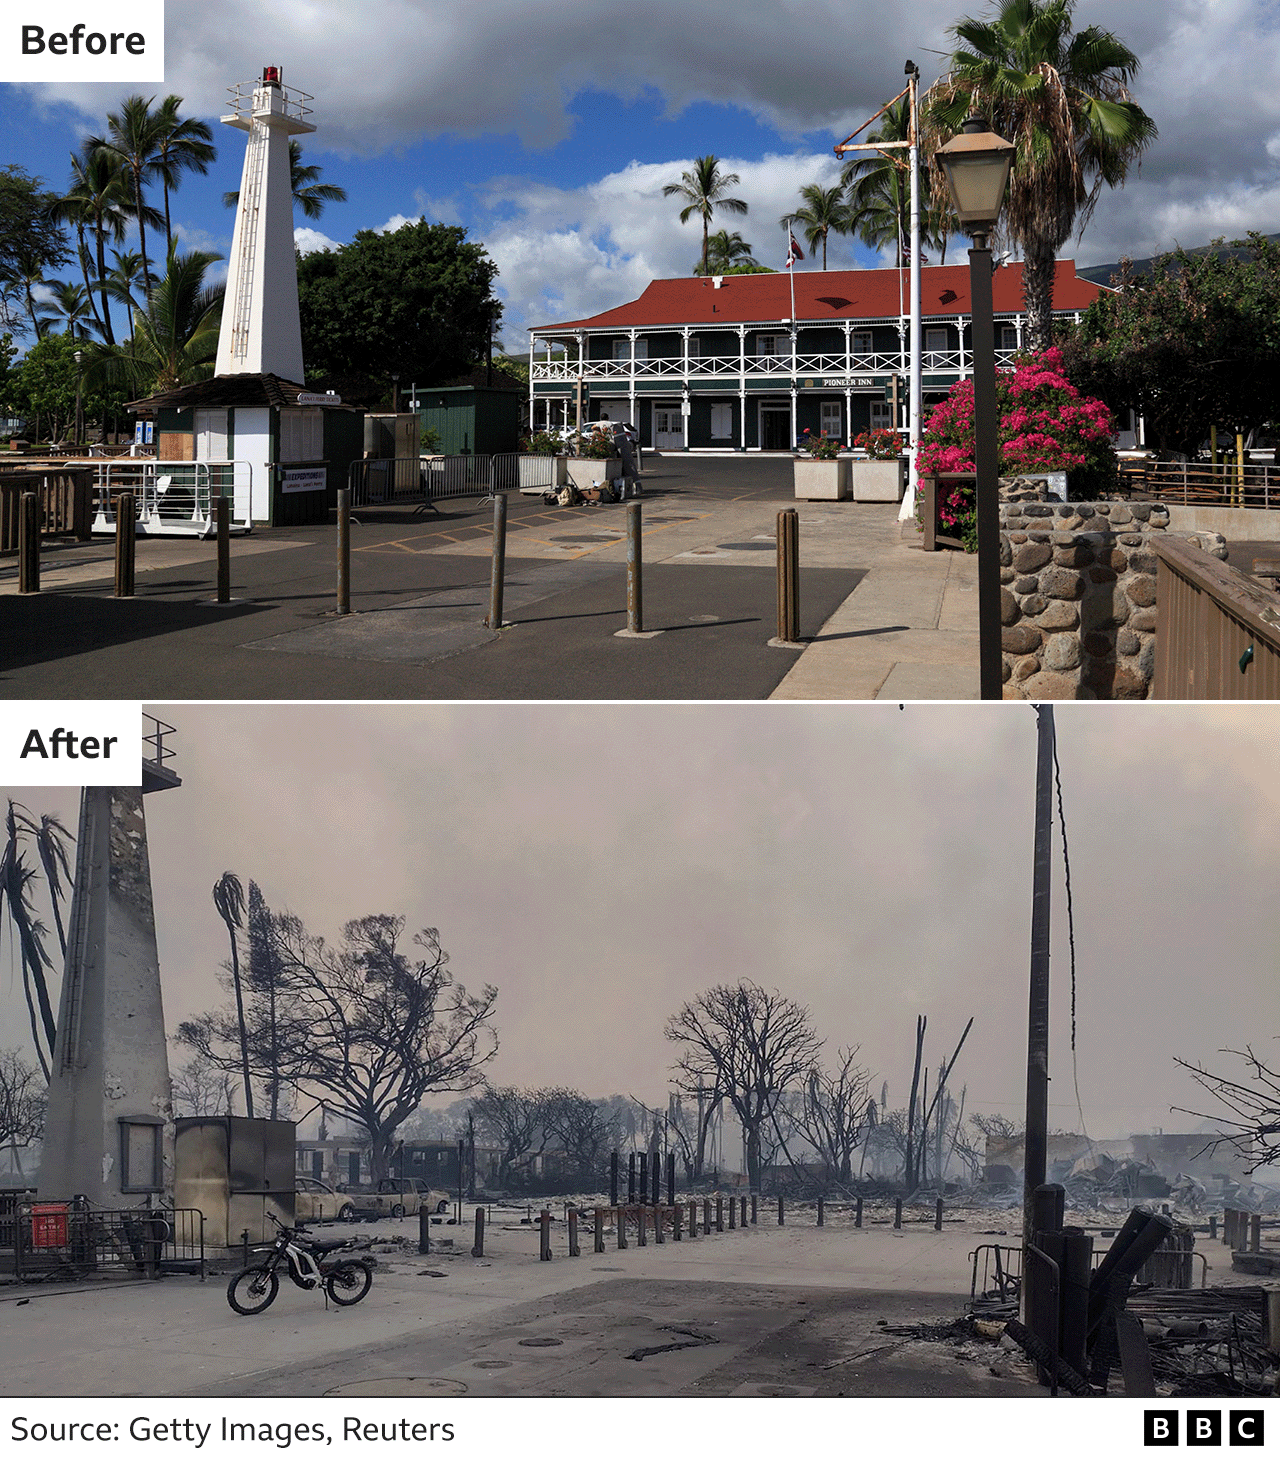 Изображения до и после, показывающие маяк Лахайны и гостиницу Pioneer Inn